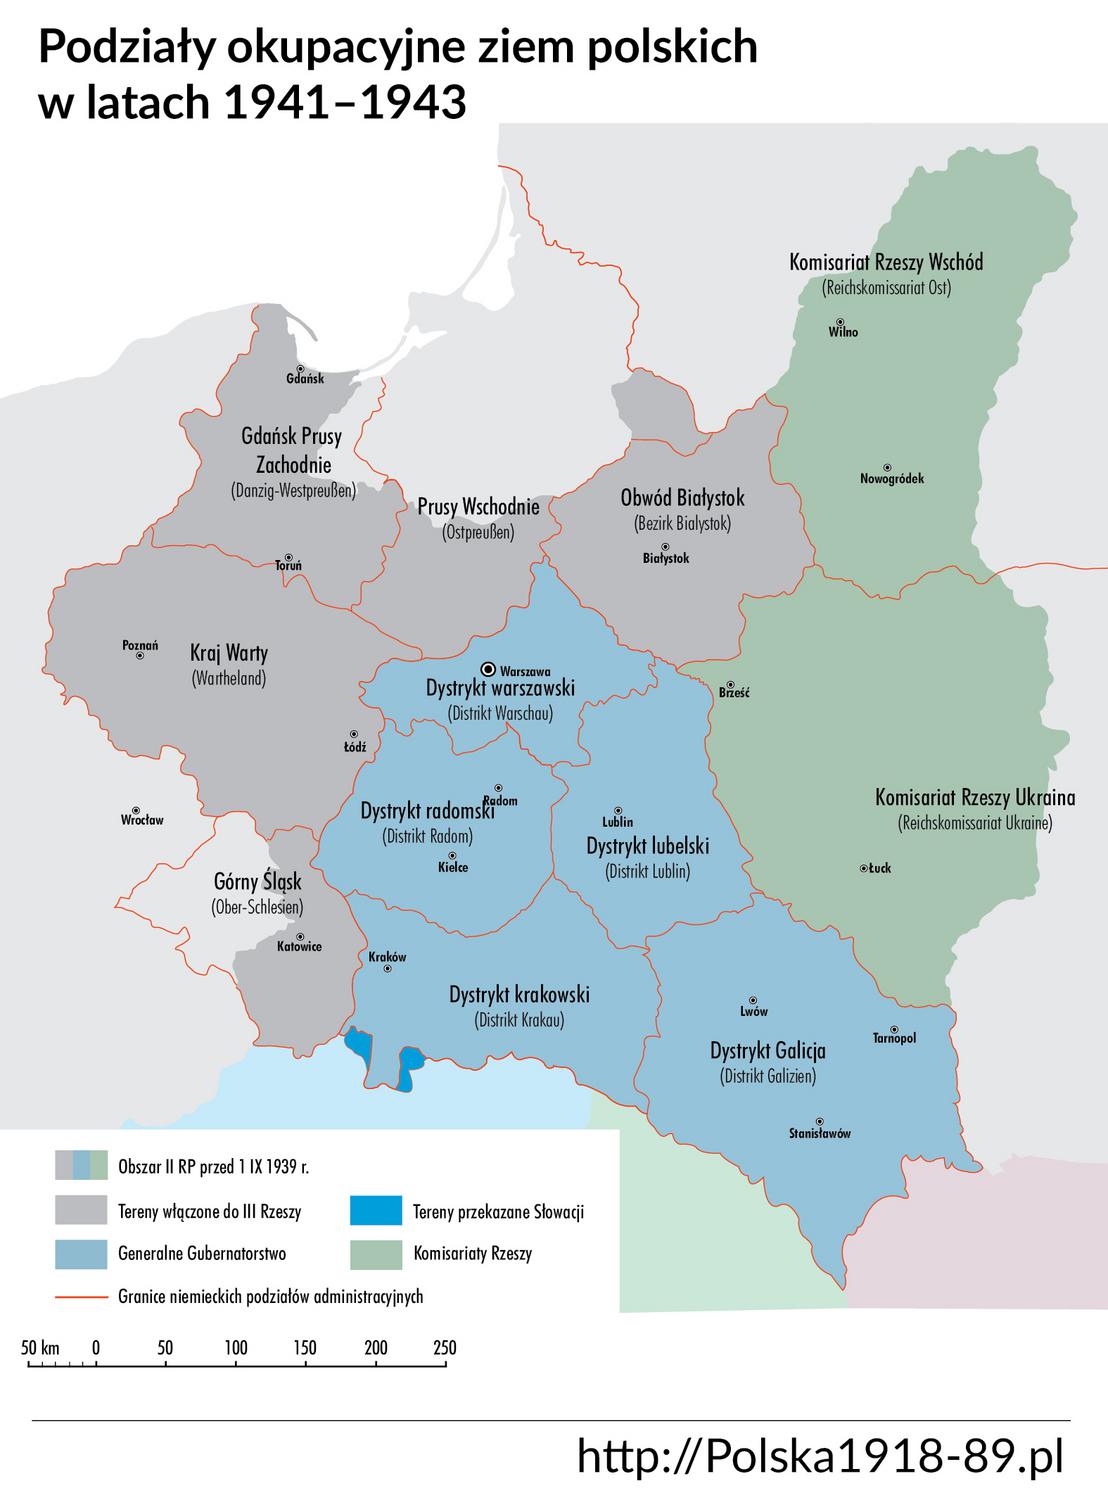 Podział okupacyjny Polski w latach 1941–1943